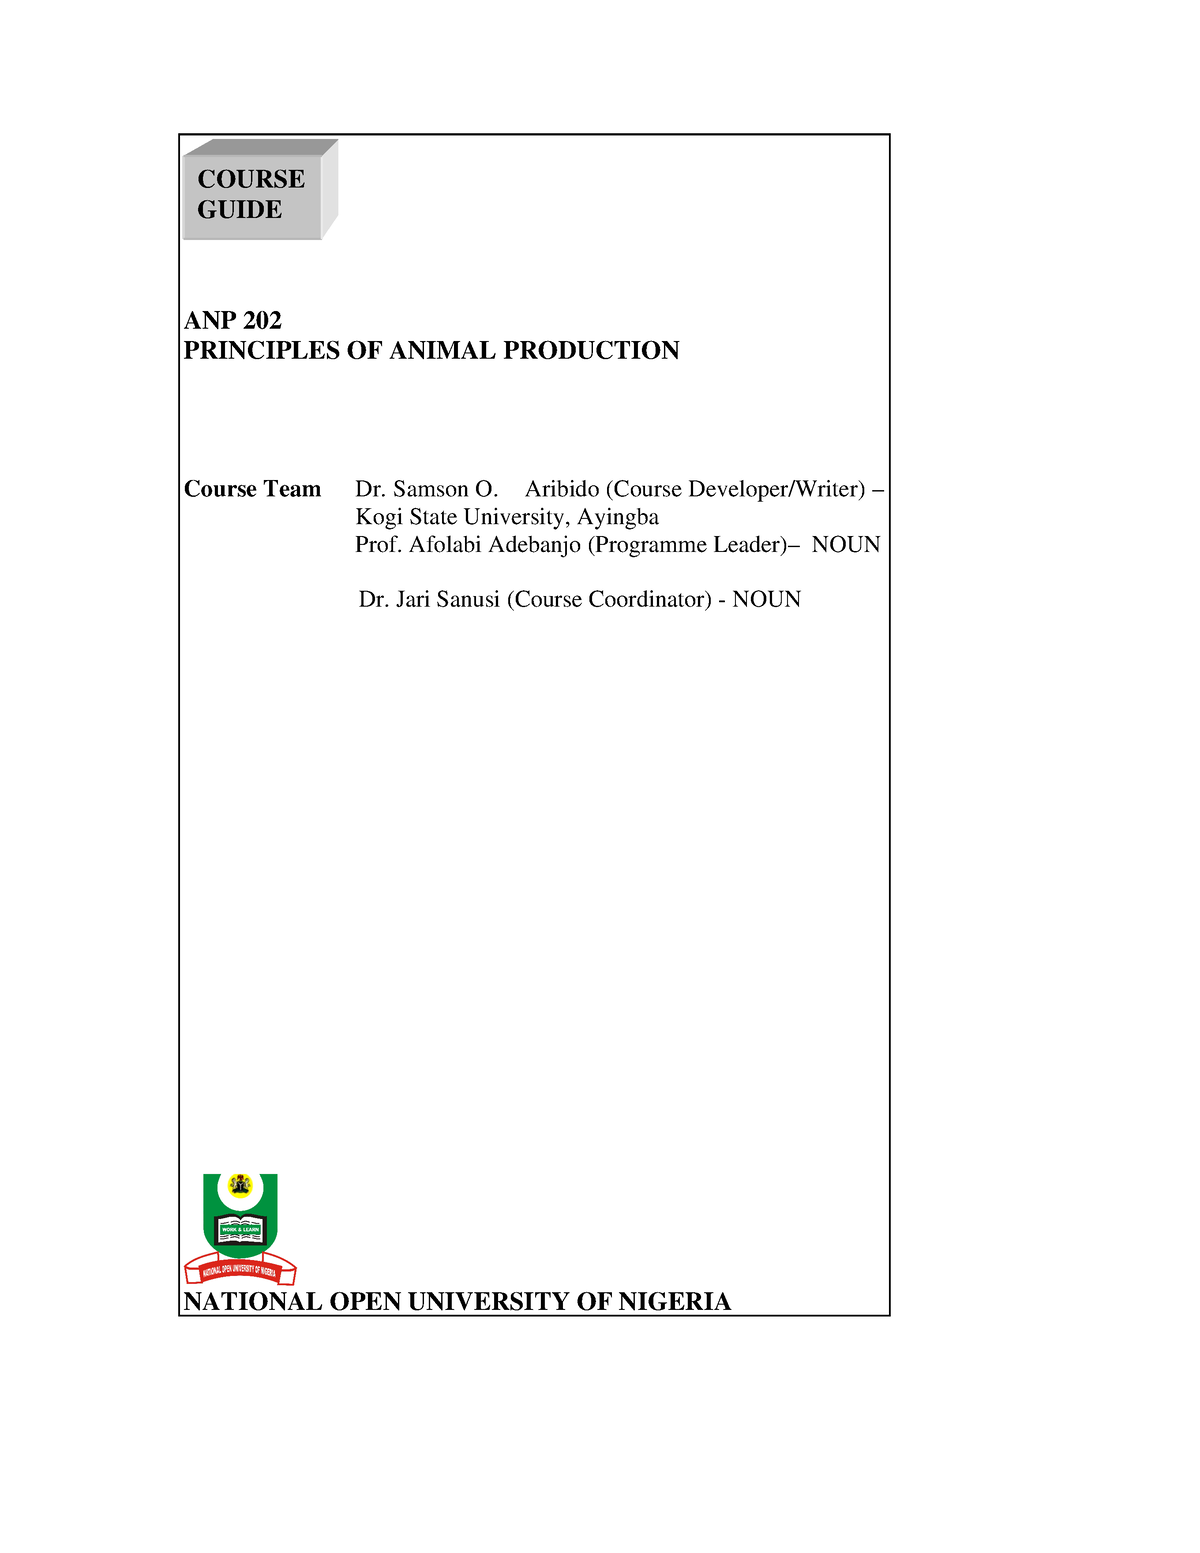 ANP 202 Principles of Animal Production ANP 202 PRINCIPLES OF ANIMAL